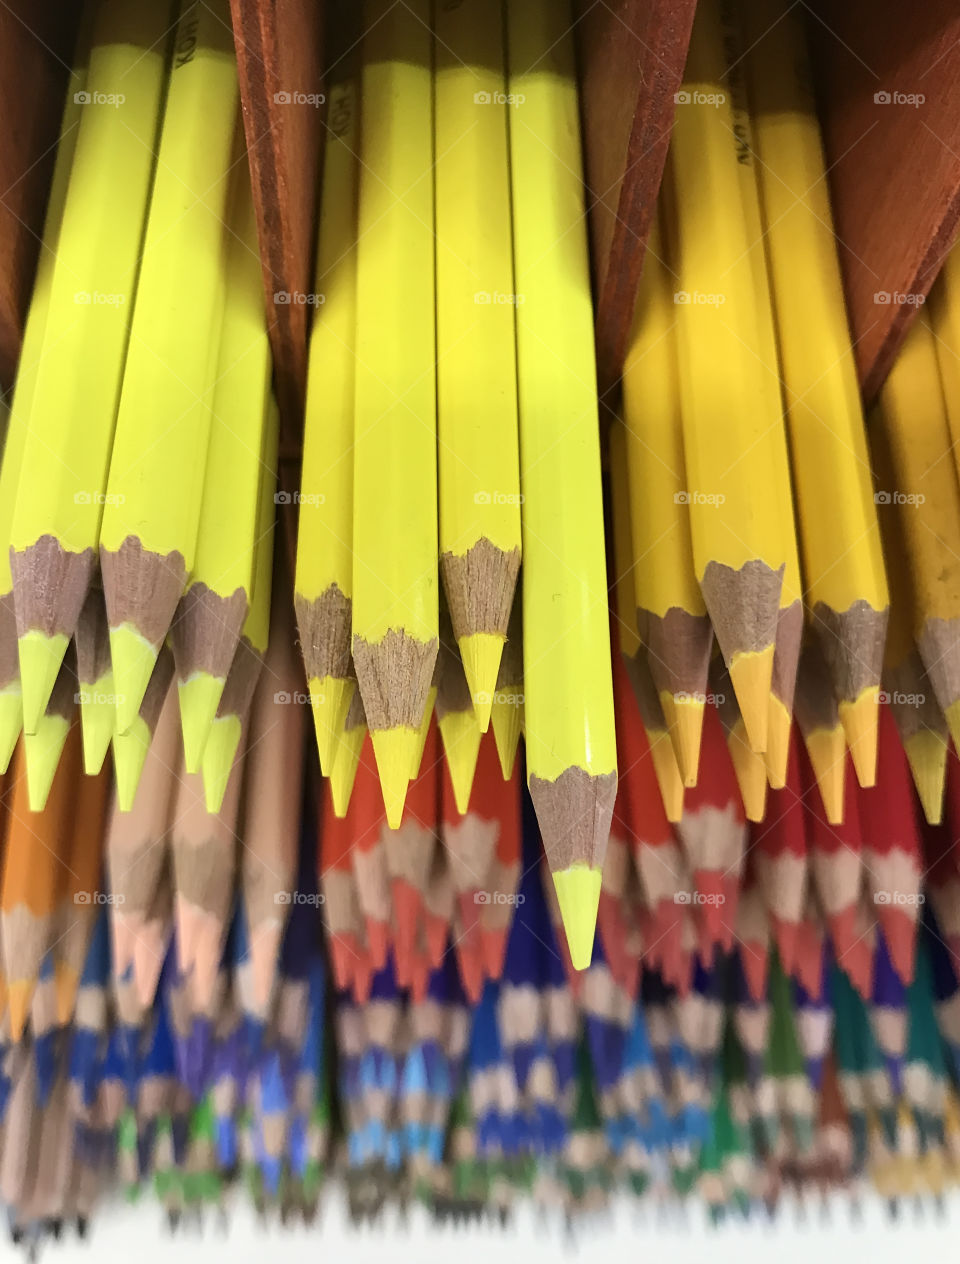 Multicolored pencils for creativity